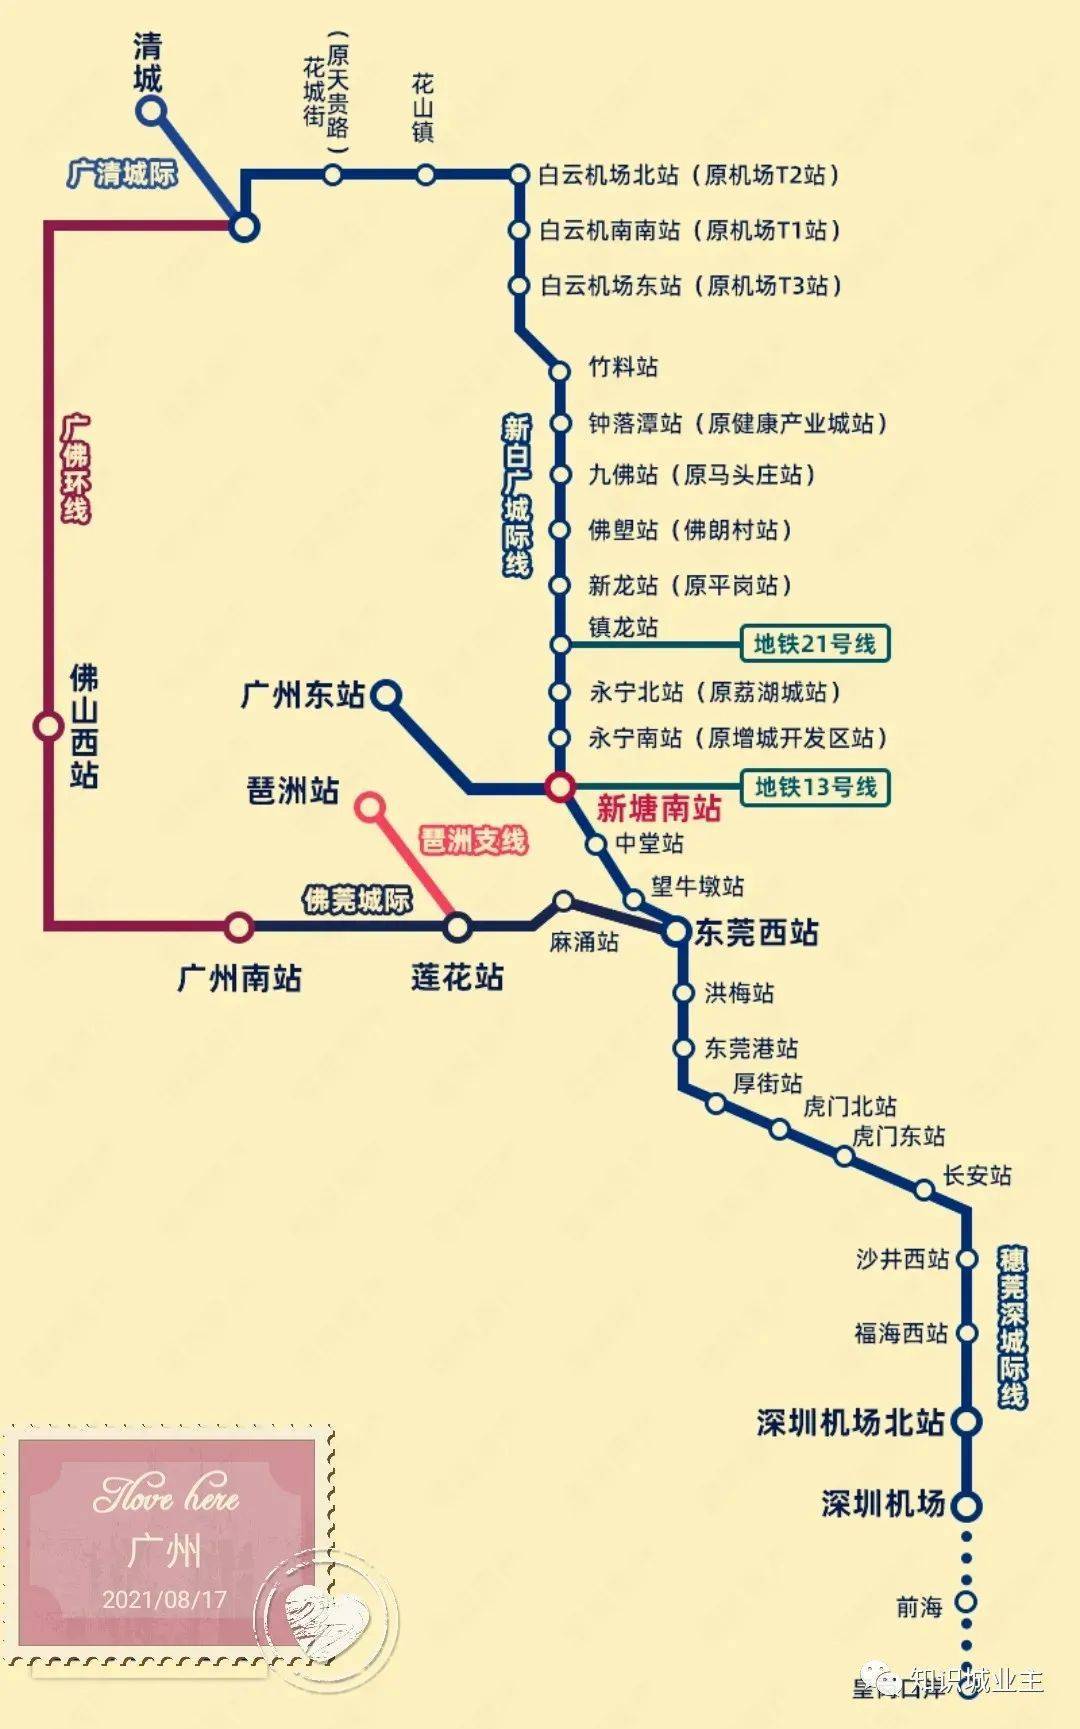 又称穗莞深北延段,从广州新塘经白云机场至广州北站,全长77